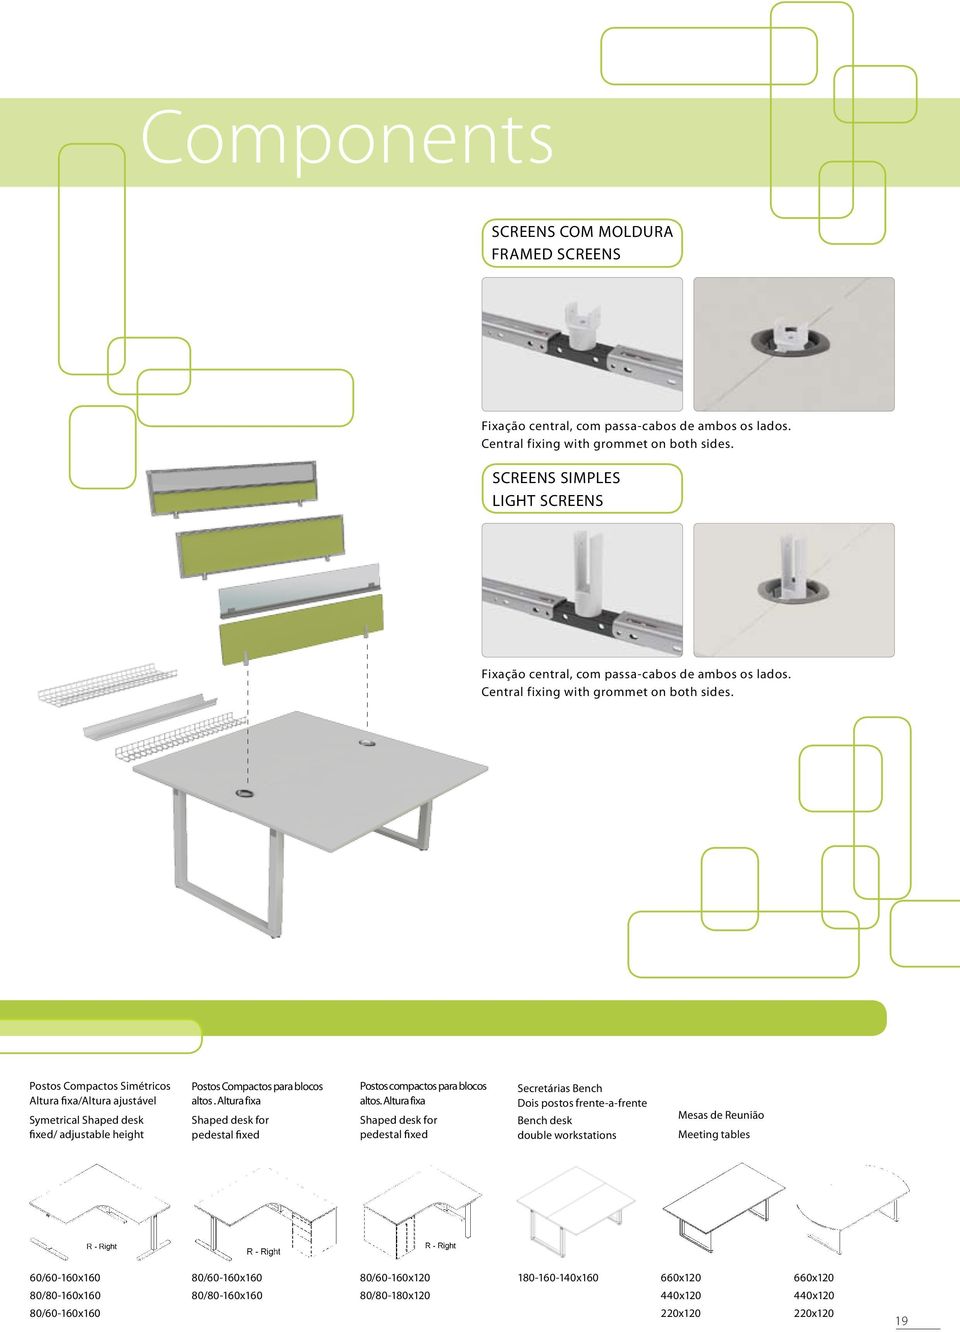 Postos Compactos Simétricos Altura fixa/altura ajustável Symetrical Shaped desk fixed/ adjustable height Postos Compactos para blocos altos.